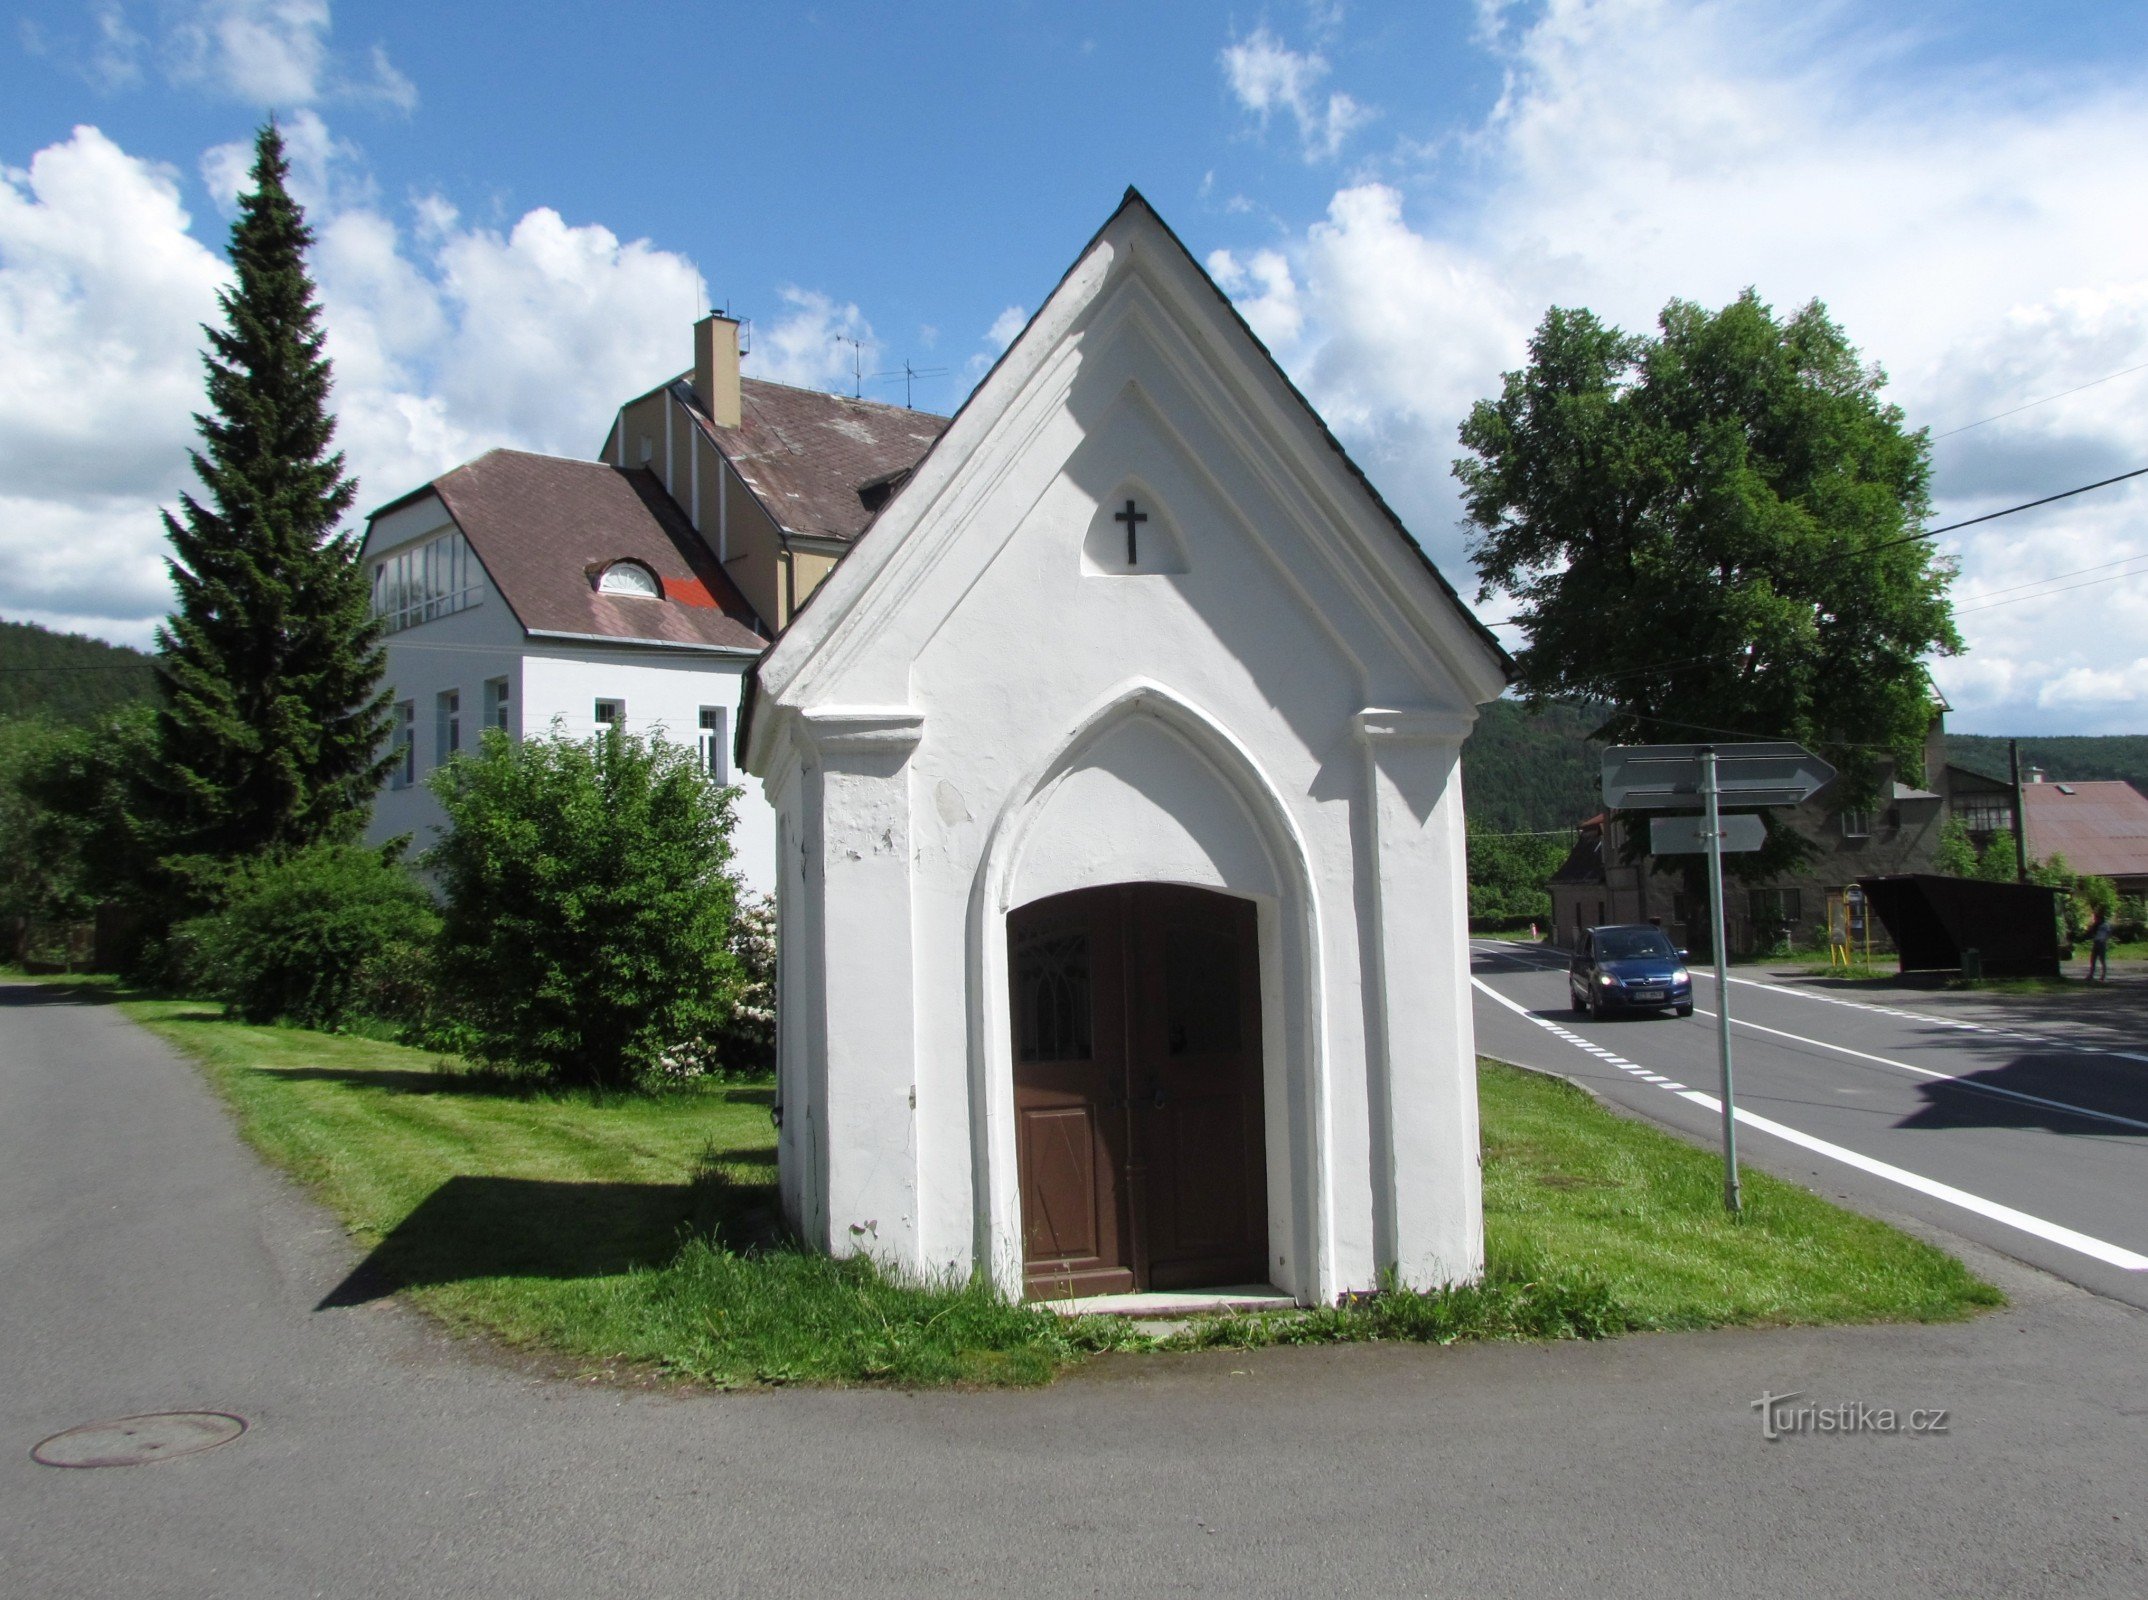 Kapel in Karlovice